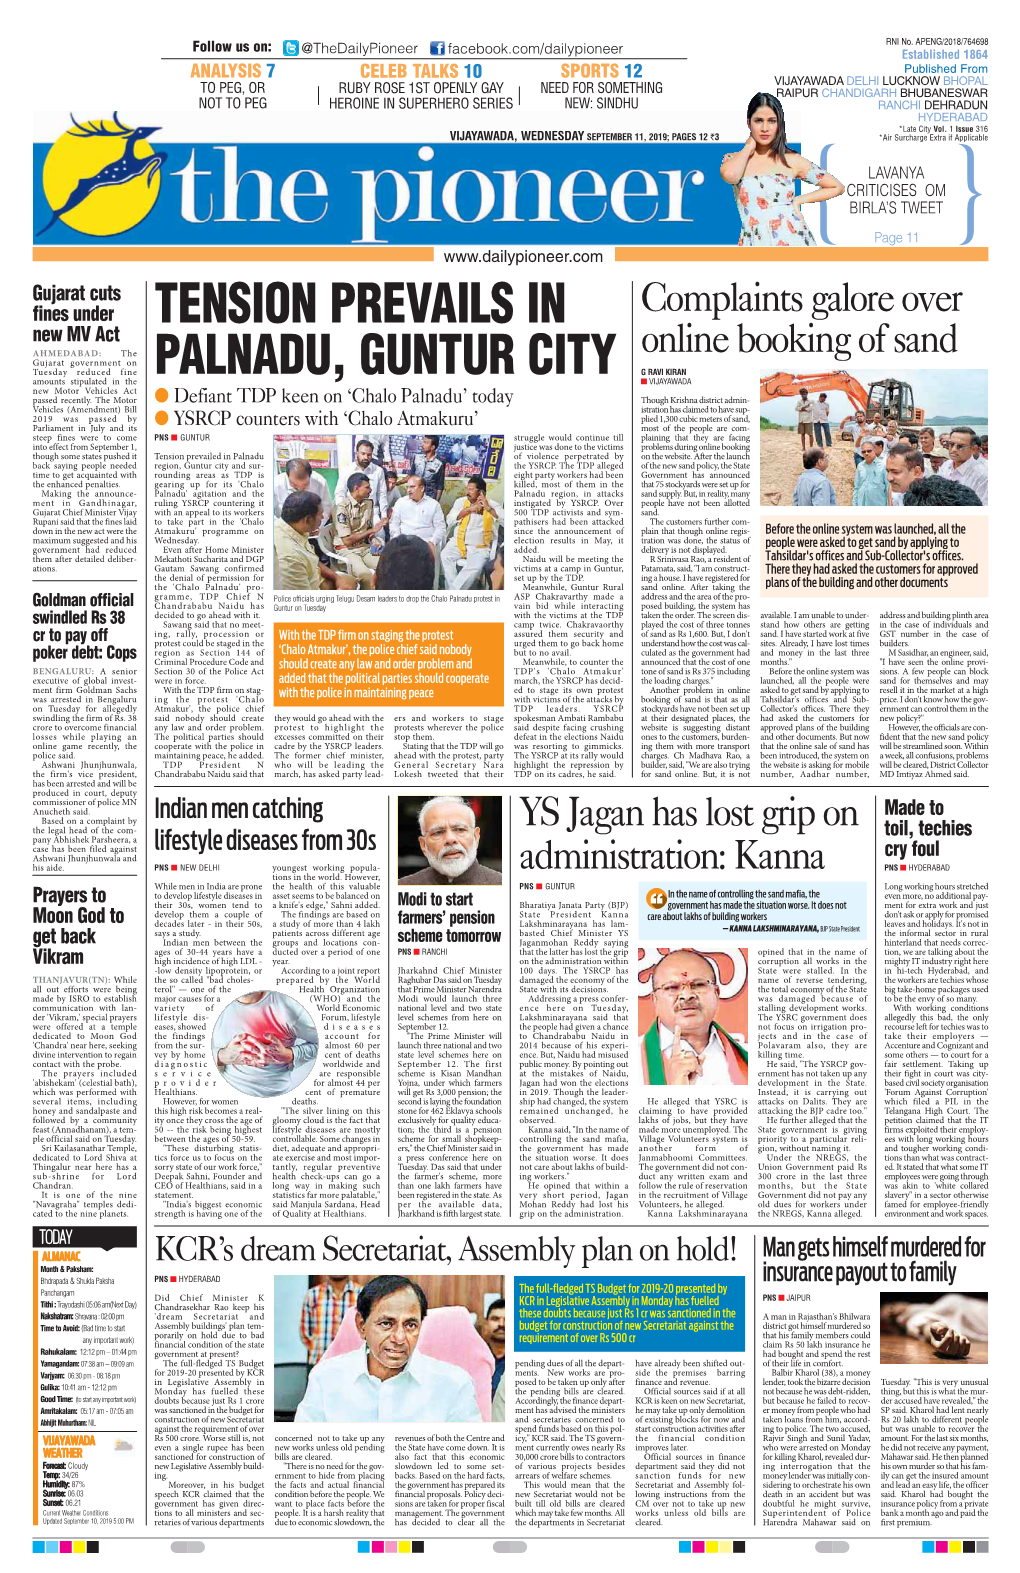 Tension Prevails in Palnadu, Guntur City